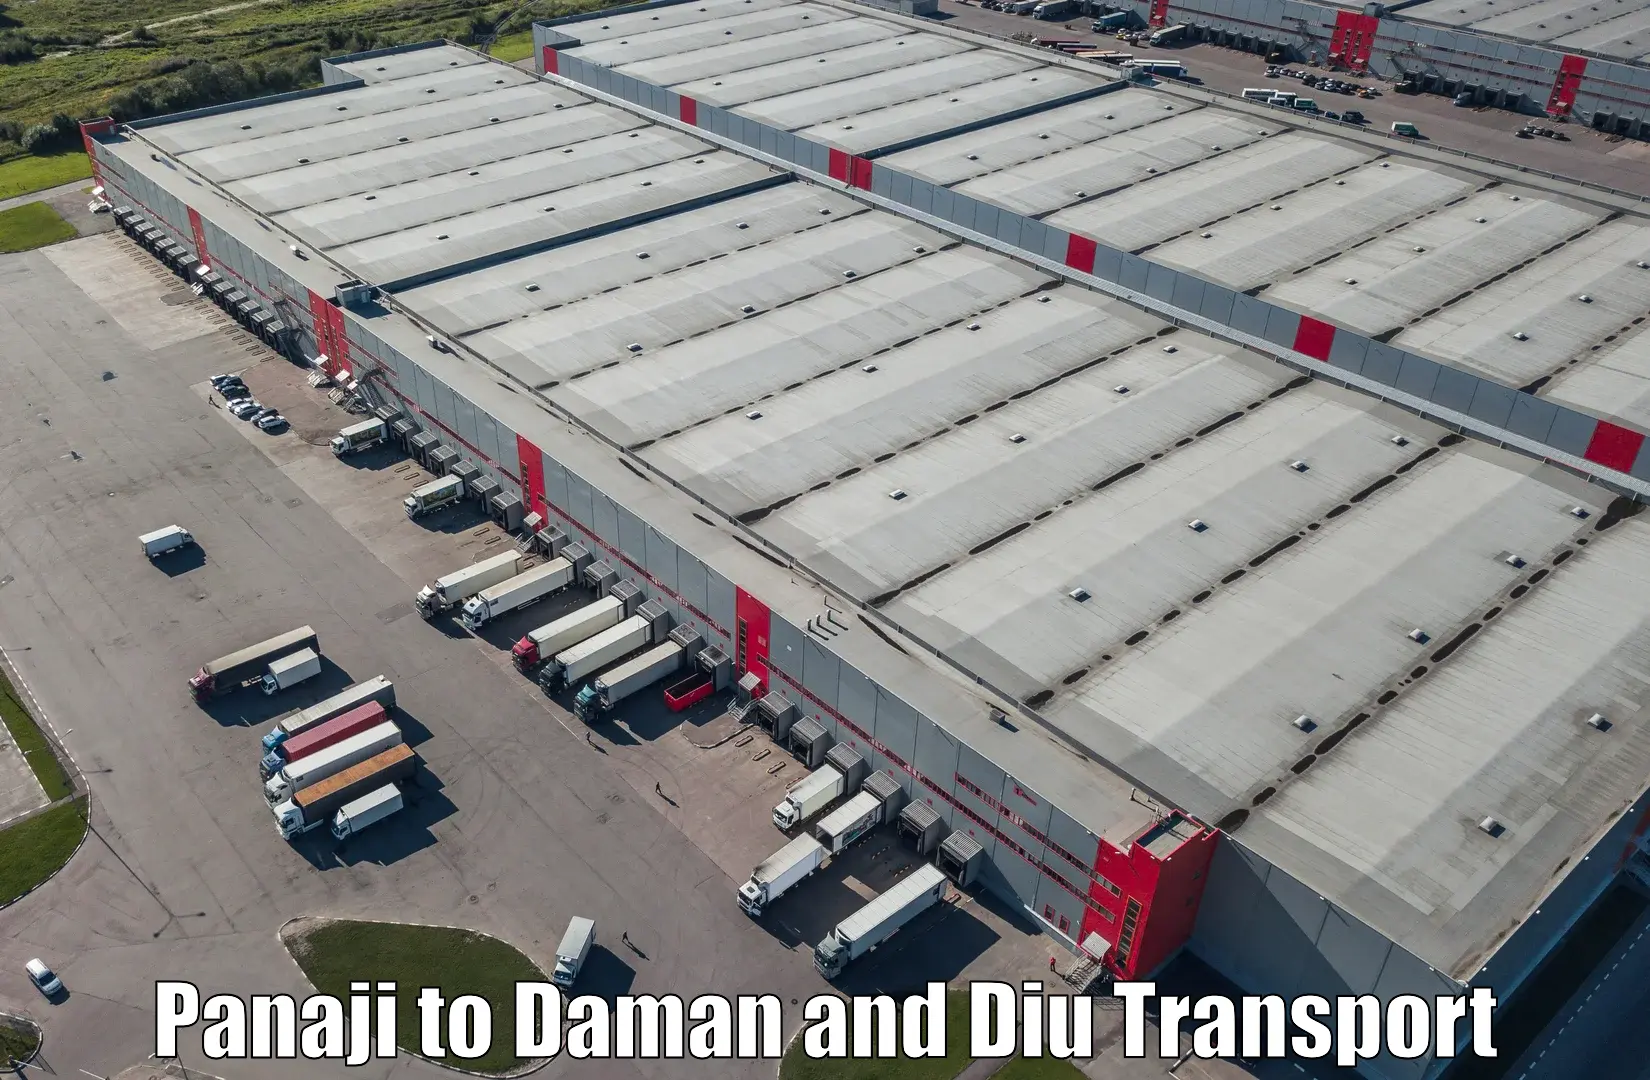 Nearest transport service Panaji to Daman and Diu